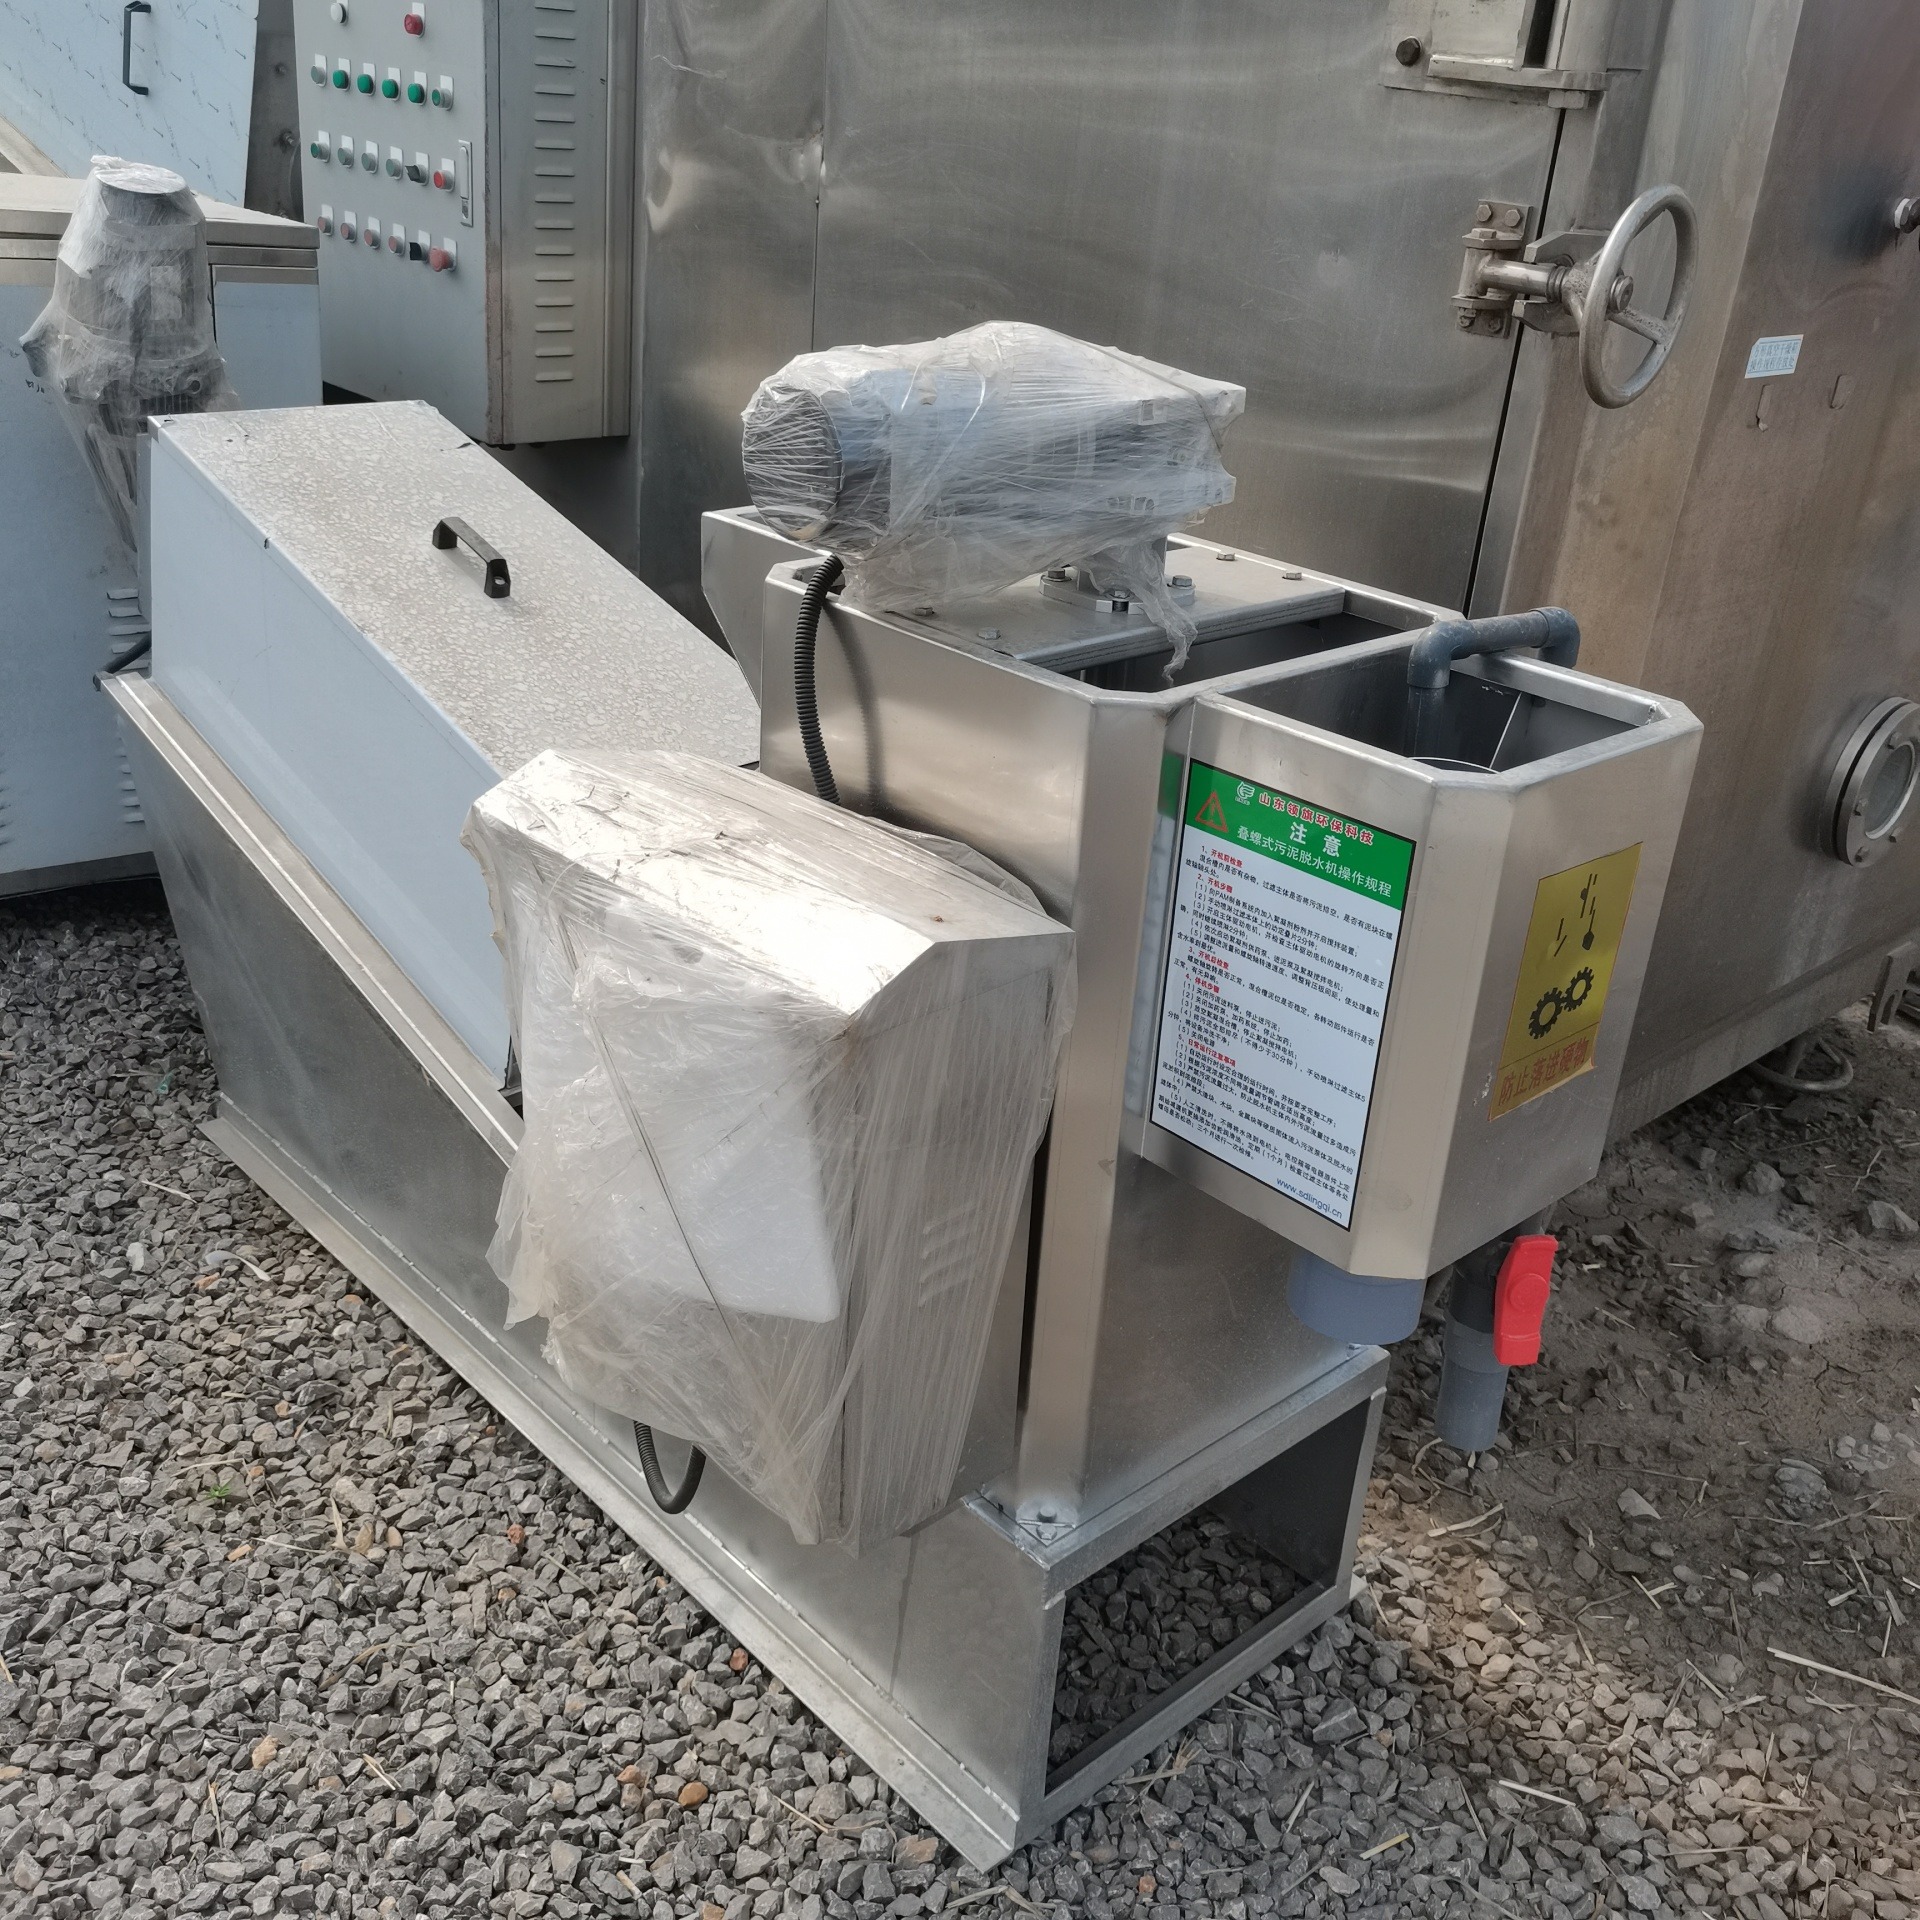 众钢回收二手污泥脱水机  污水处理  污泥处理设备   叠螺污泥脱水机出售多种型号图片